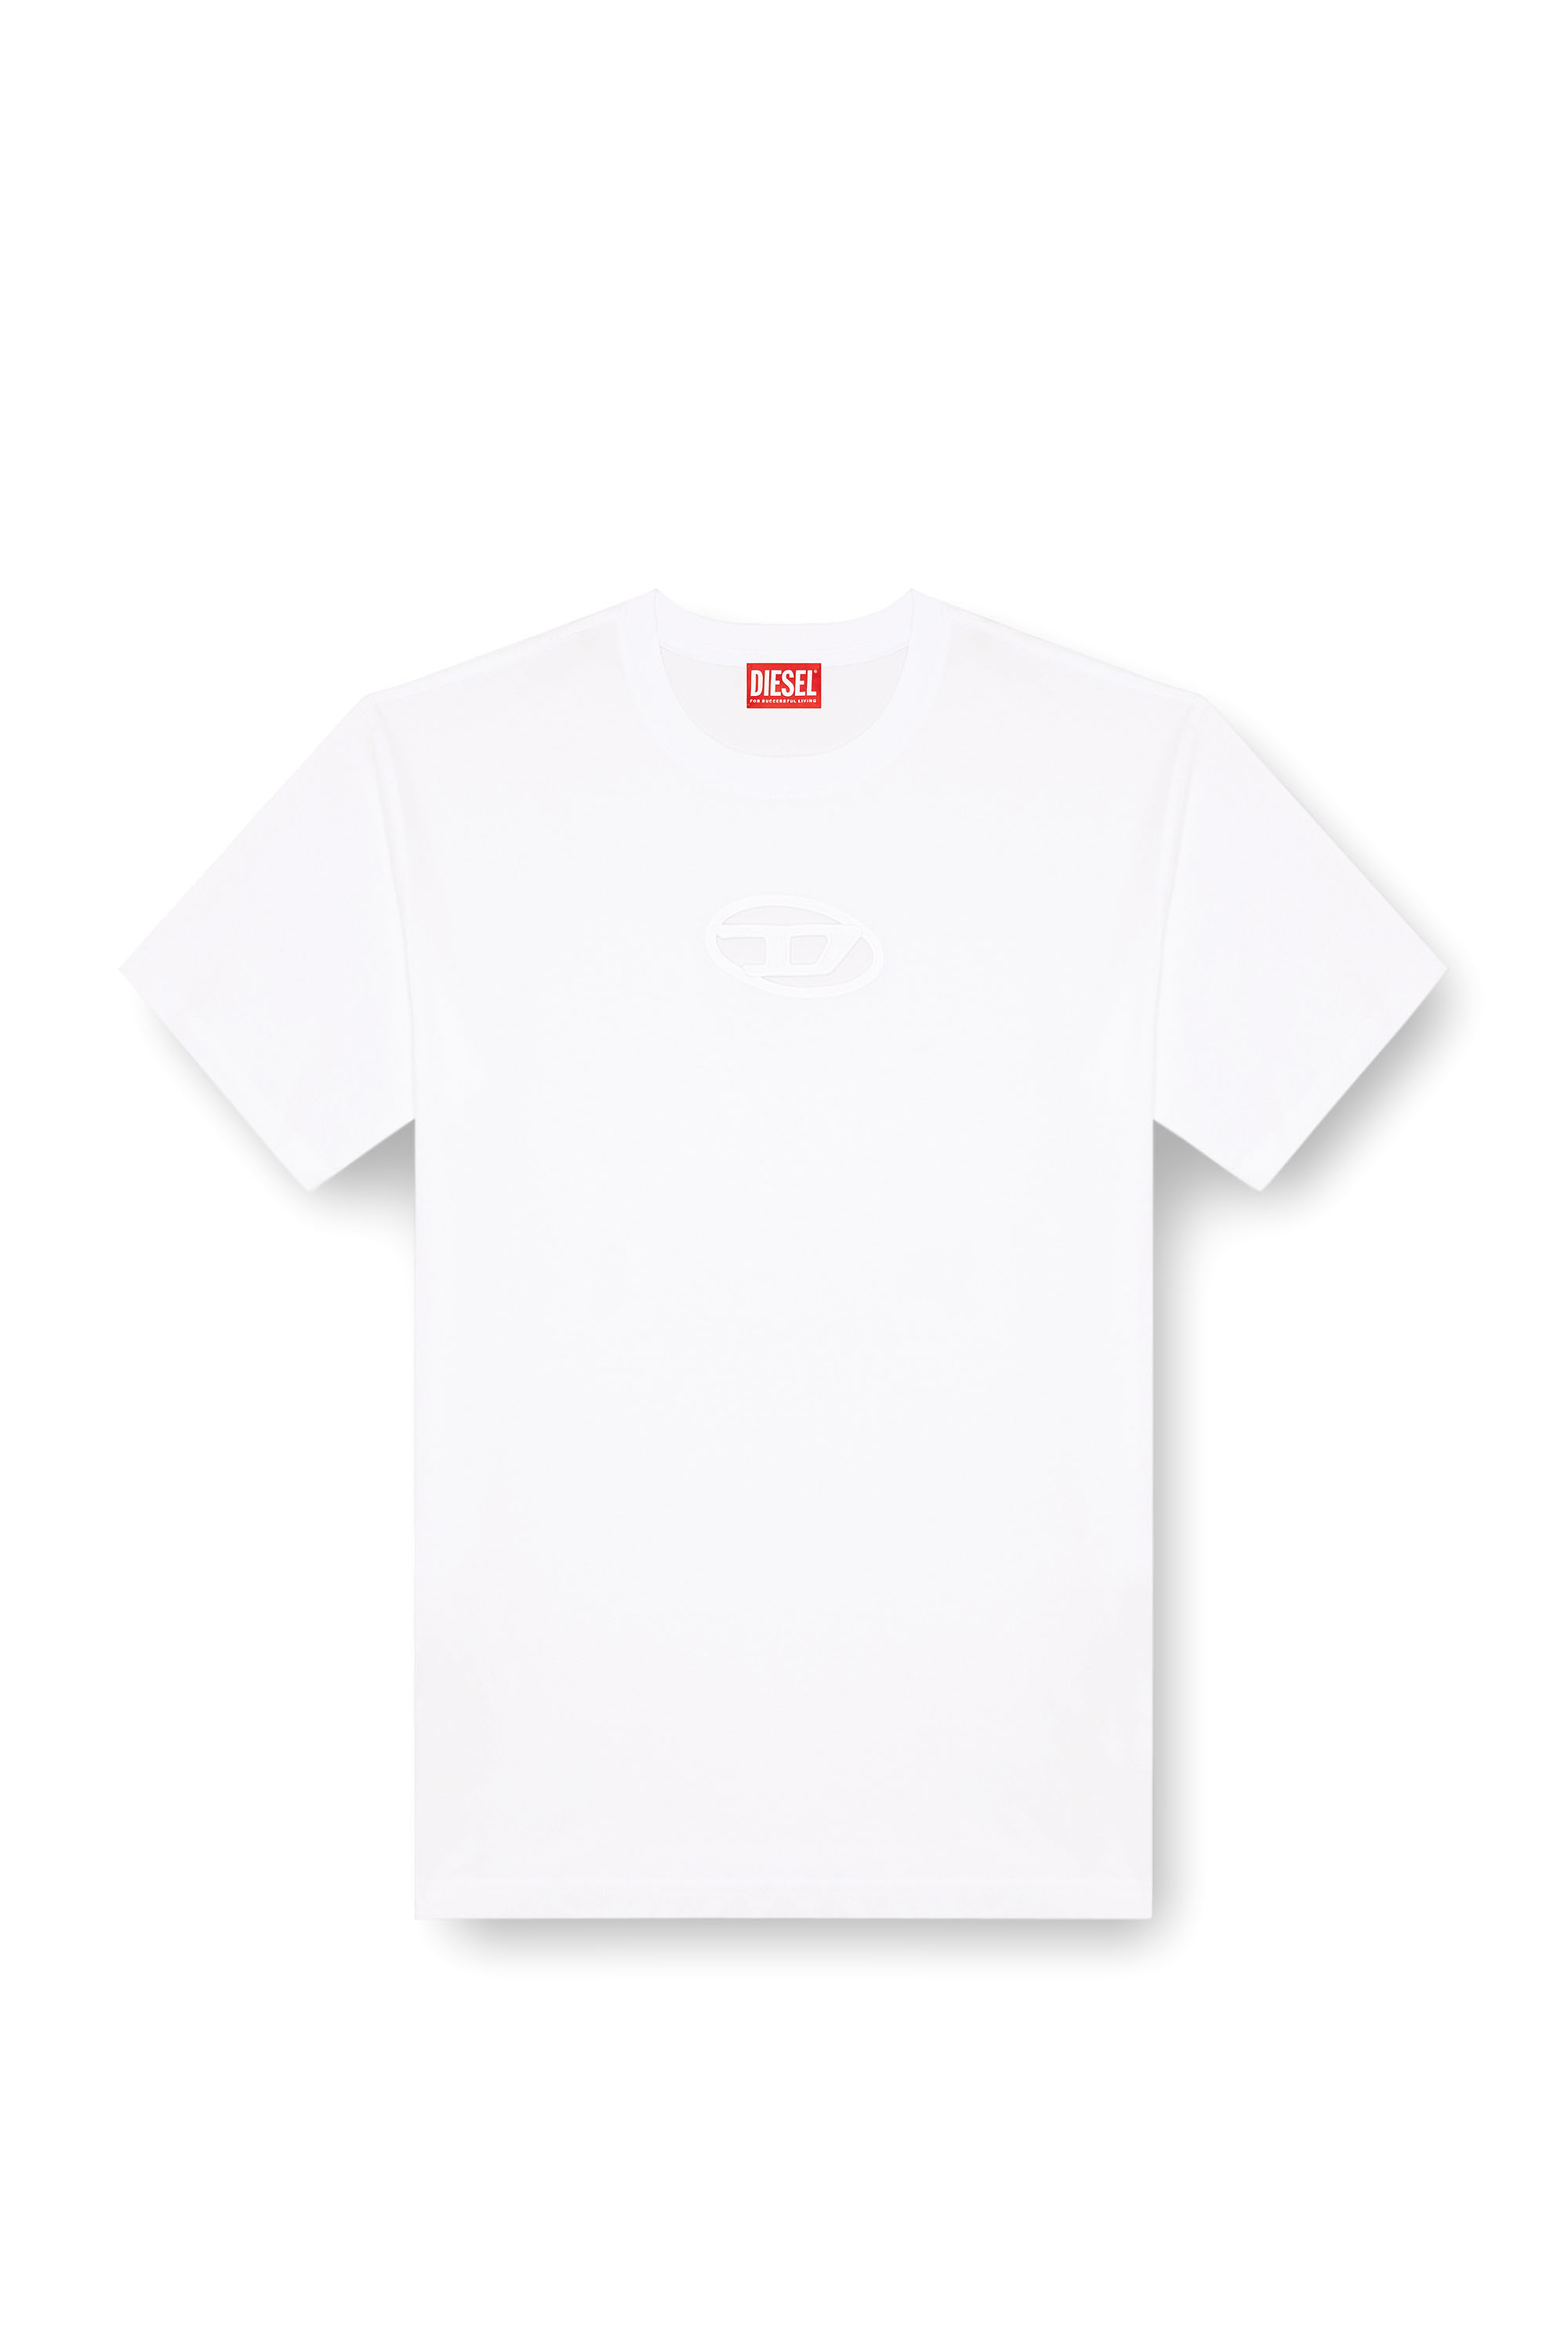 Diesel - T-BOXT-OD, Unisex Camiseta con Oval D bordado in Blanco - Image 6